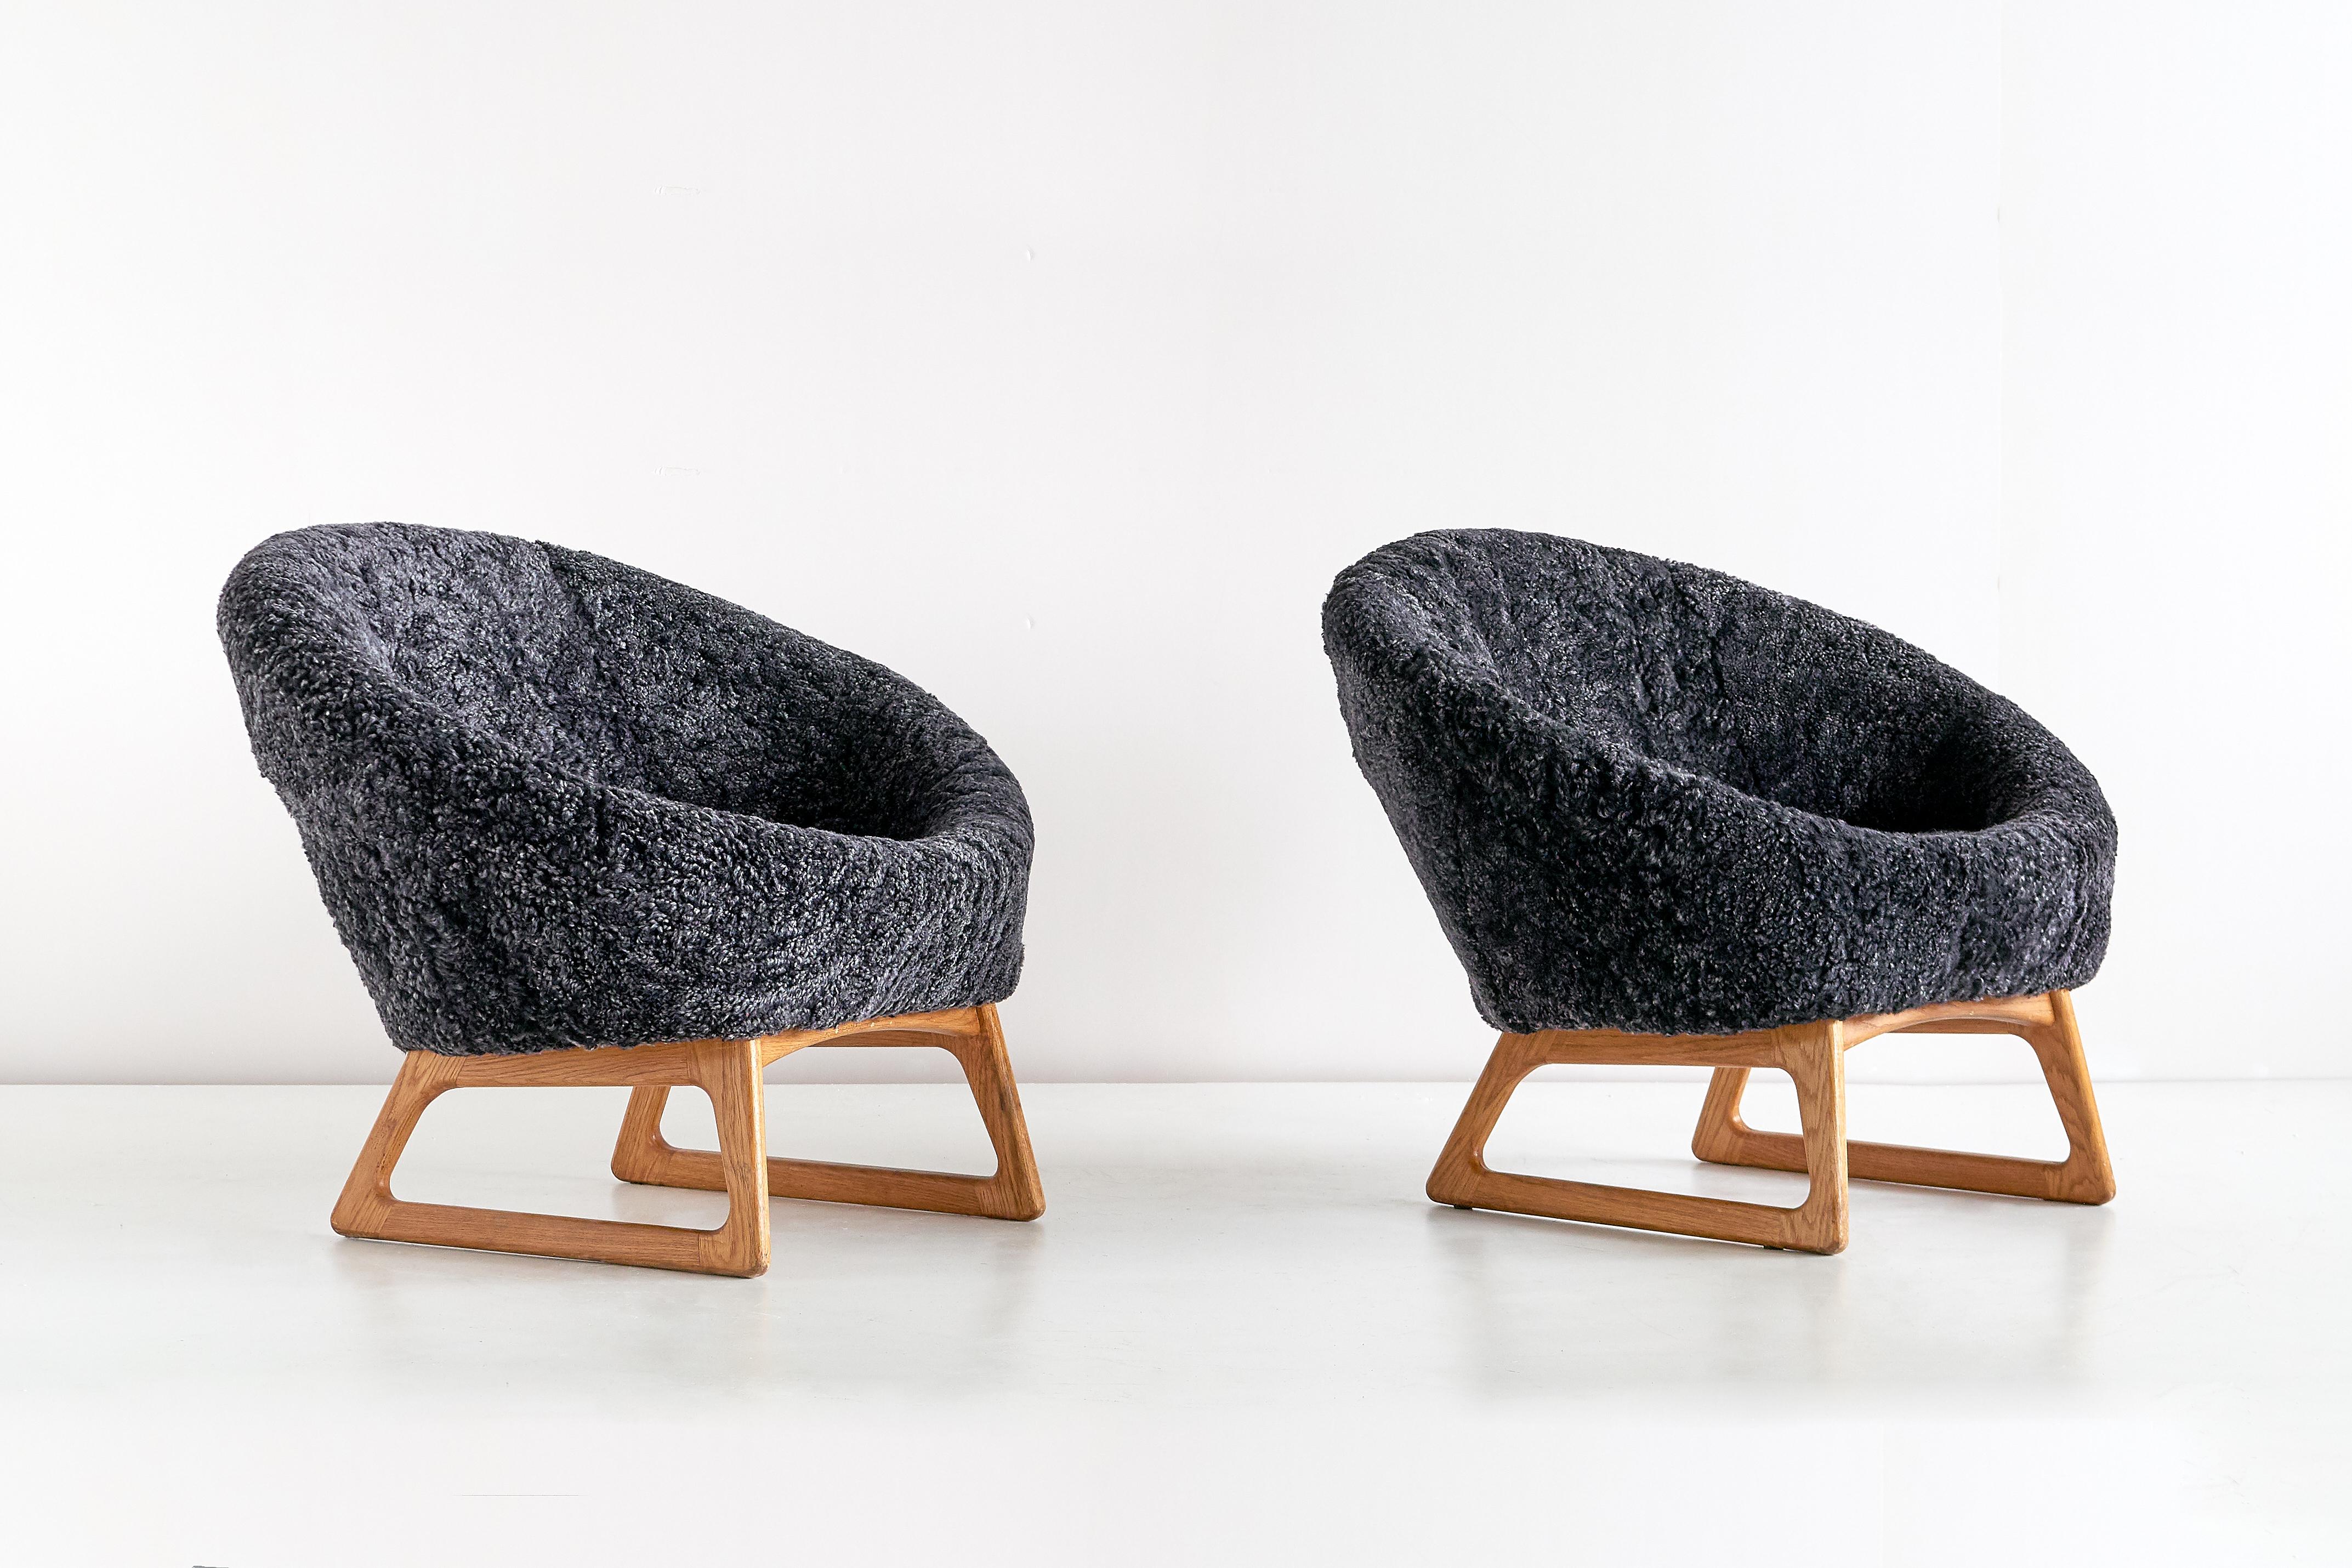 Cette paire de chaises longues rares a été conçue par Kurt Østervig et produite par le fabricant danois Rolschau Møbler en 1958. Le design est caractérisé par une coque d'assise ronde, montée sur une base frappante en forme de traîneau en chêne